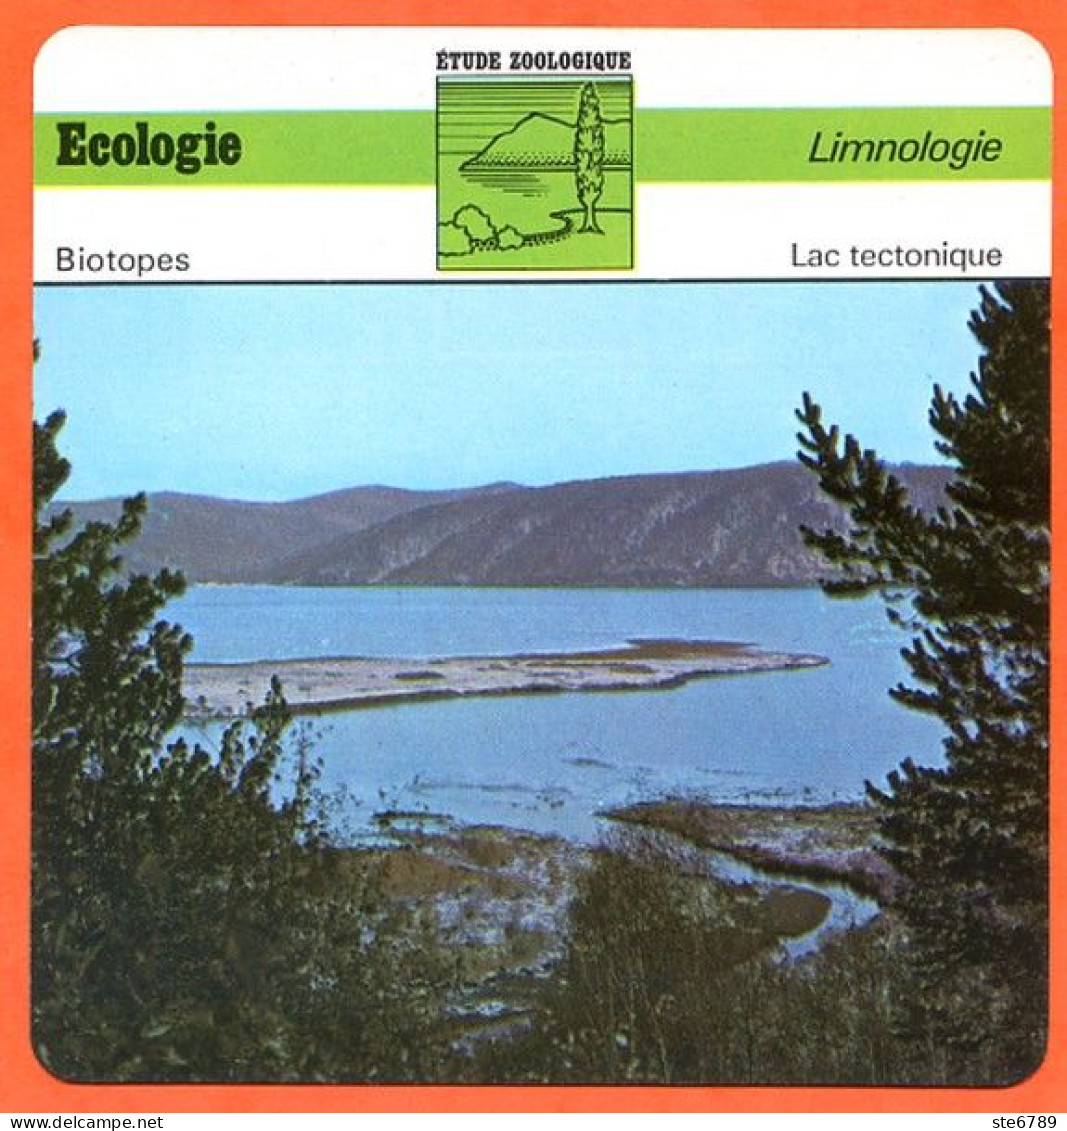 Fiche Ecologie Lac Tectonique Illustration Lac Baïkal Limnologie  Etude Zoologique Biotopes - Géographie